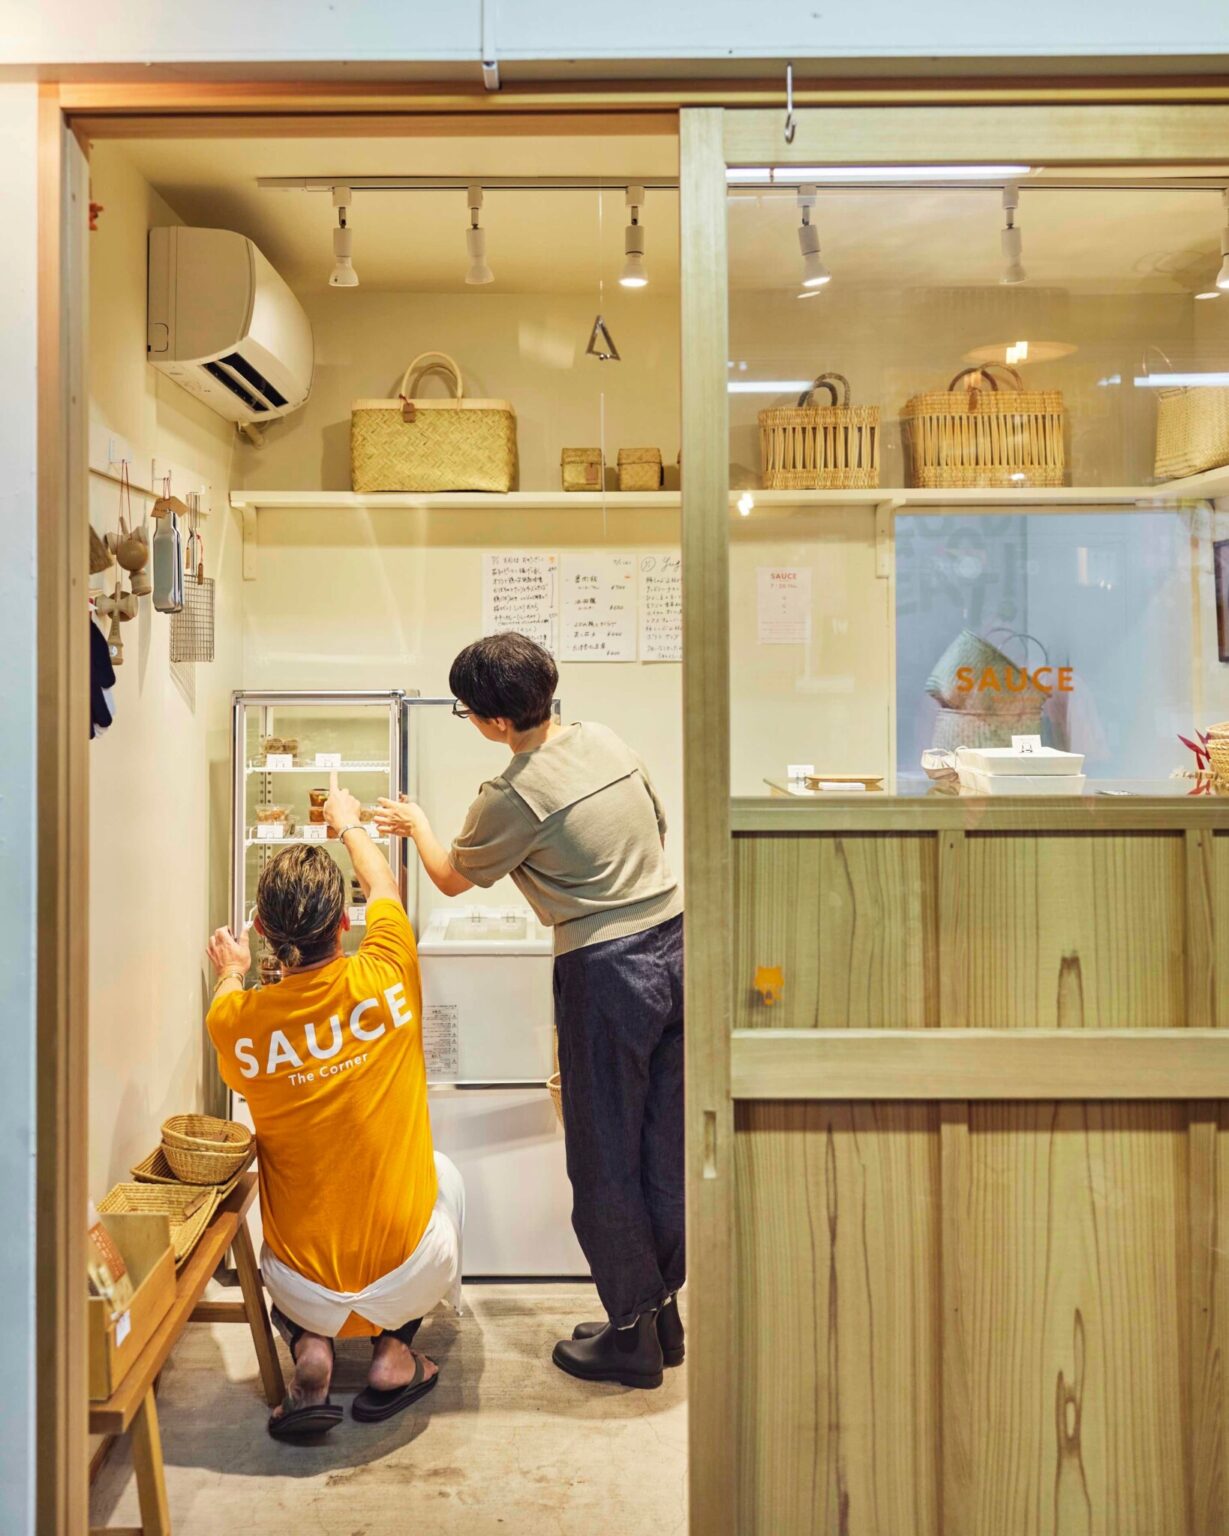 鎌倉市農協連即売所にオープン。小さなお店の中に、雑貨と共に鎌倉の味が詰まっている。